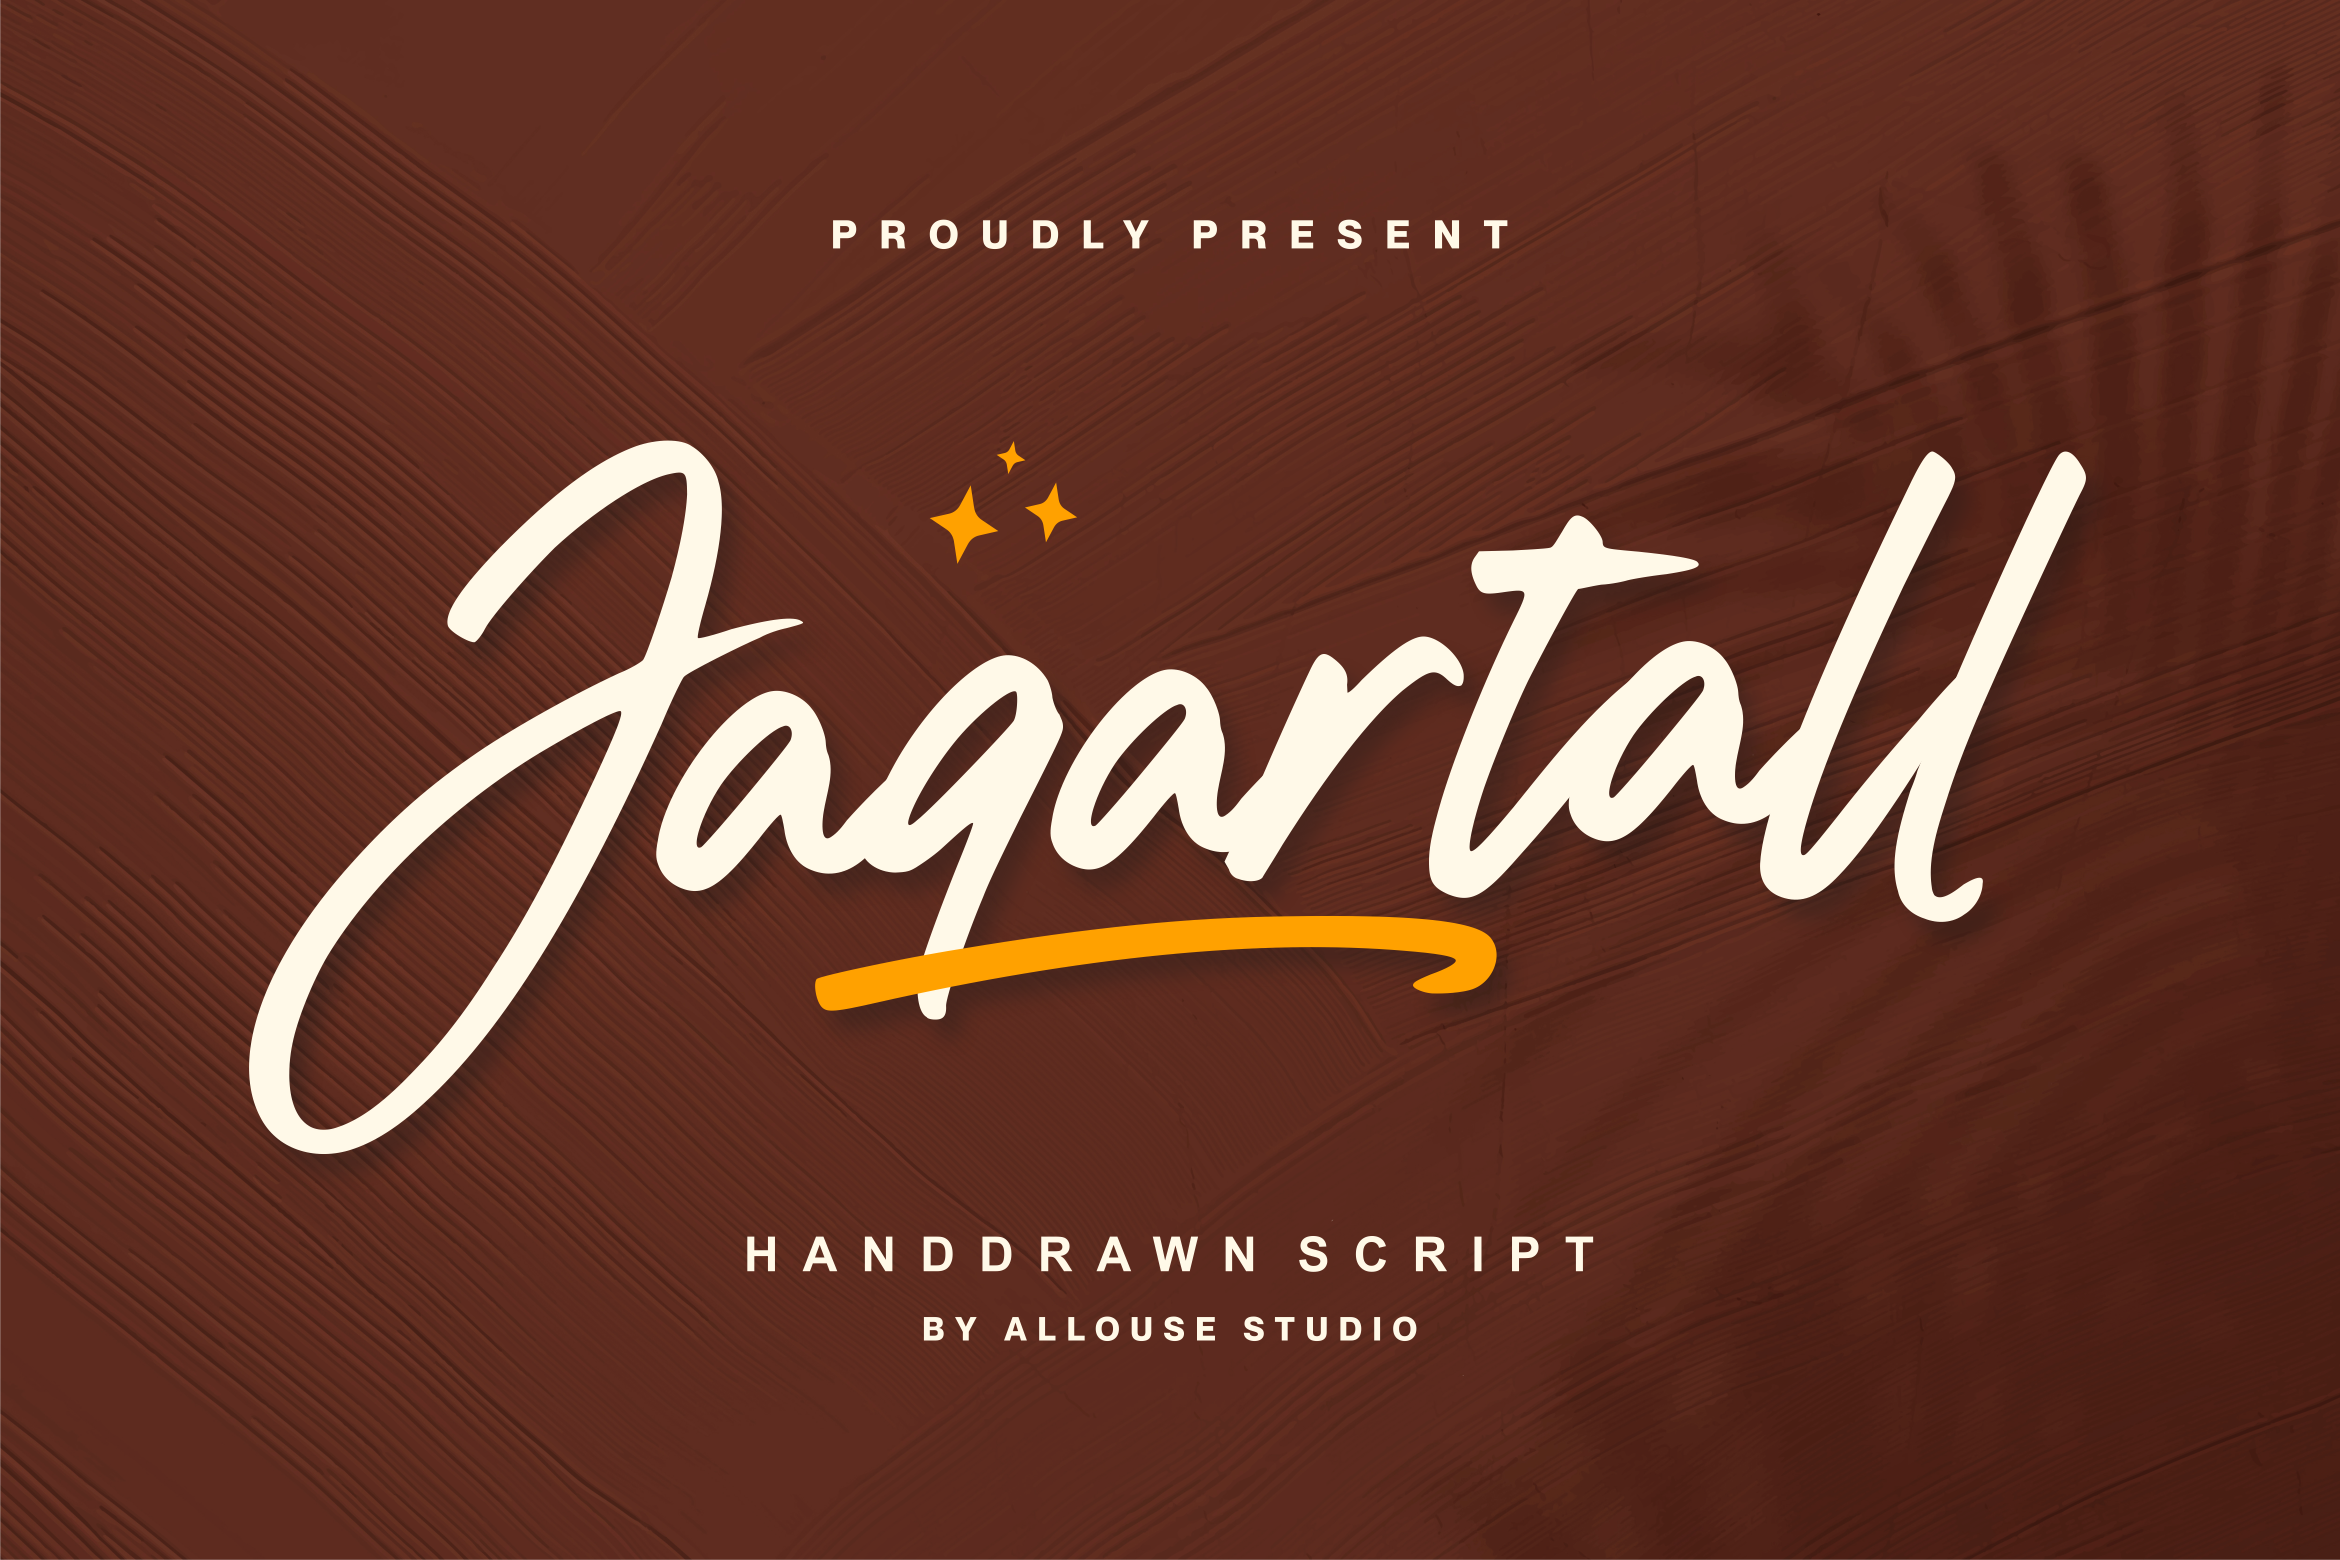 Jaqartall Script Font